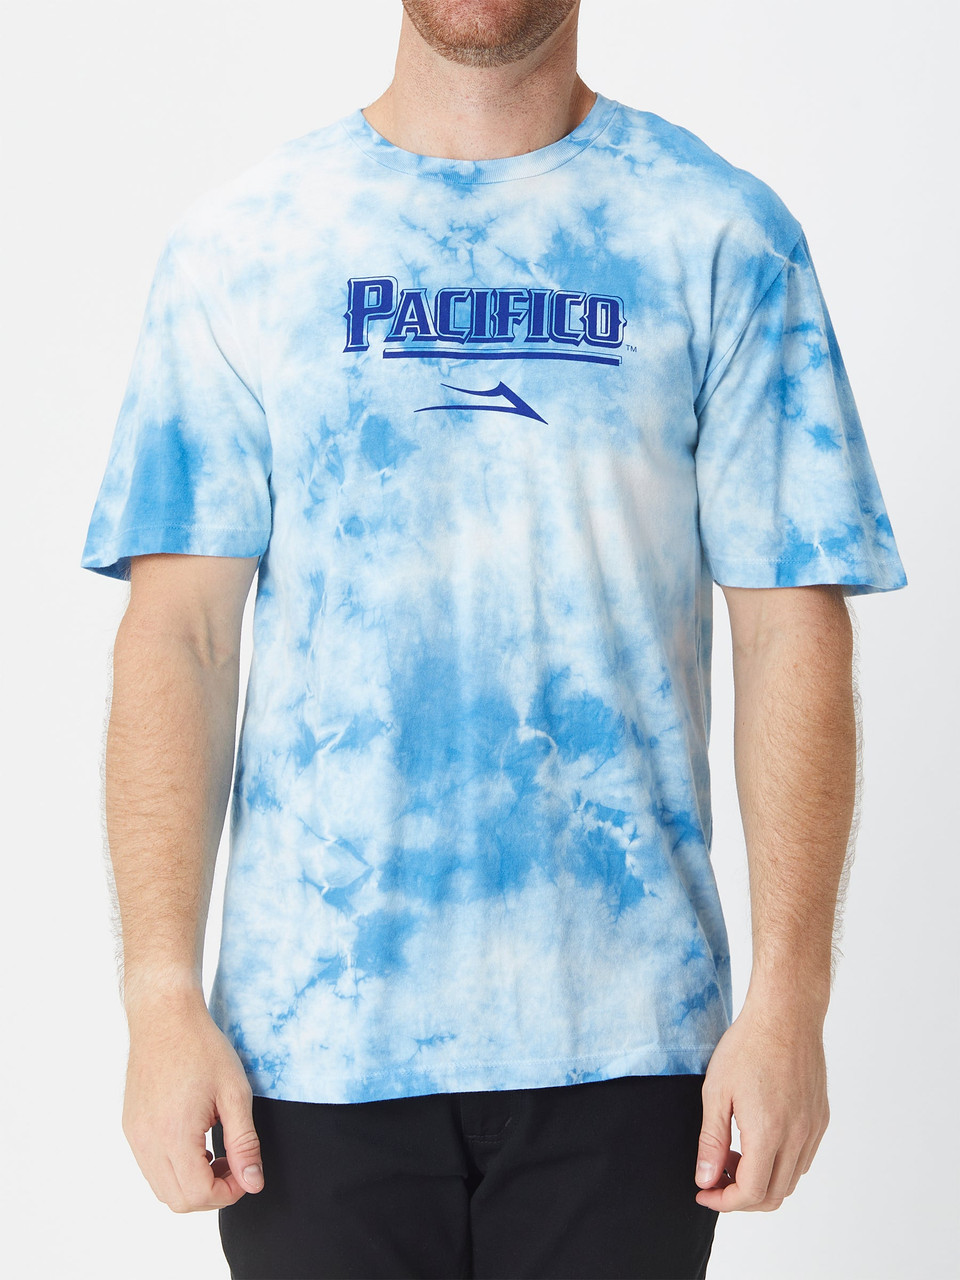 Lakai x Pacifico Tie Dye T-Shirt